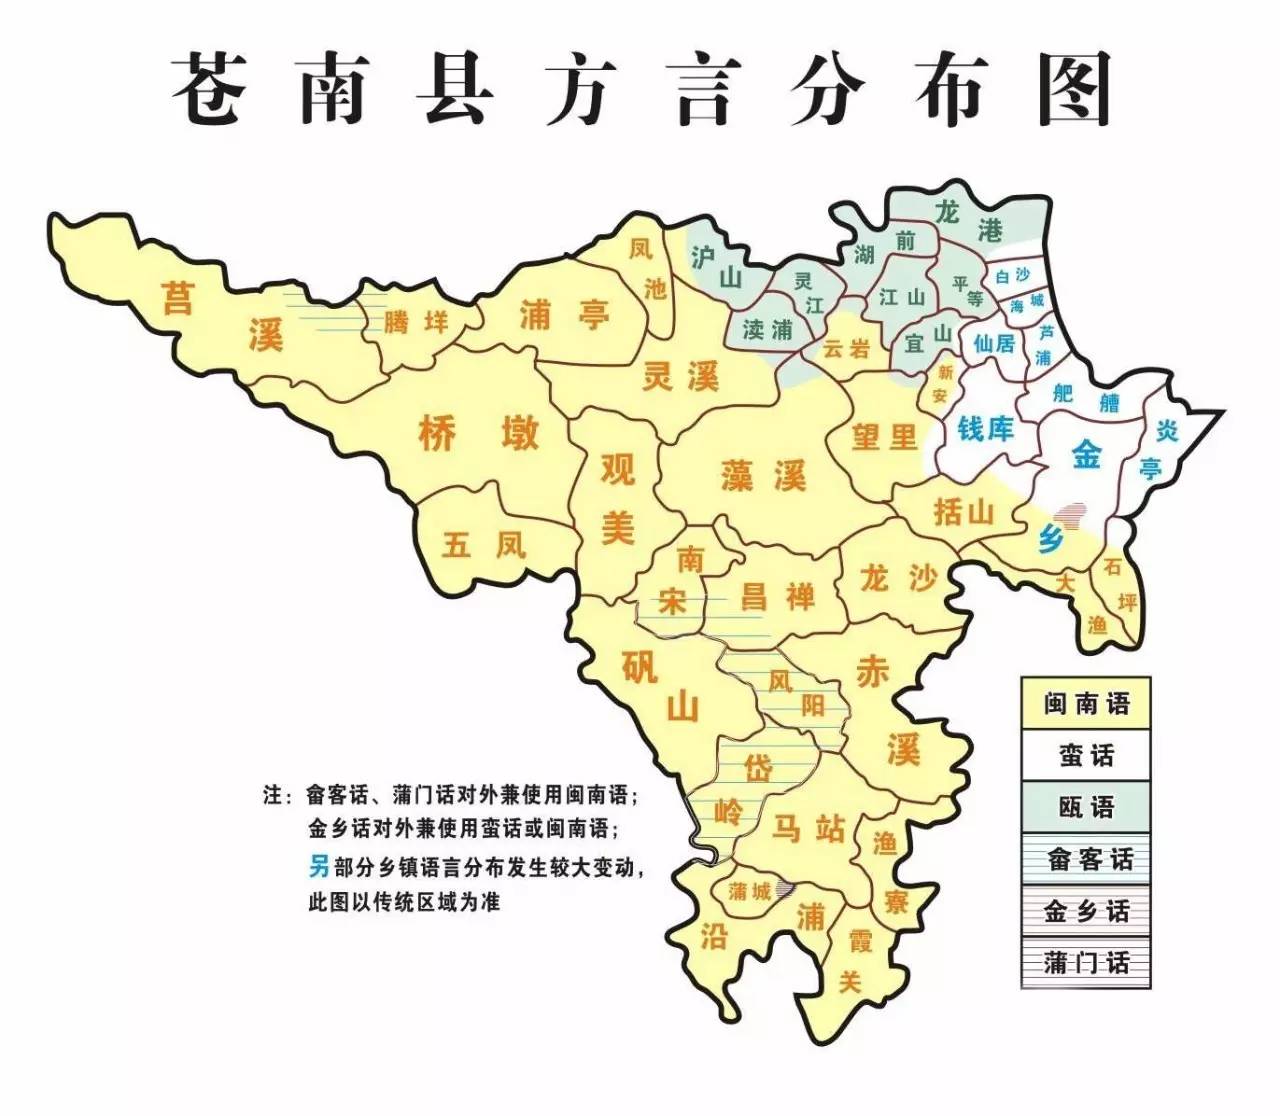 苍南县地图 金乡镇图片